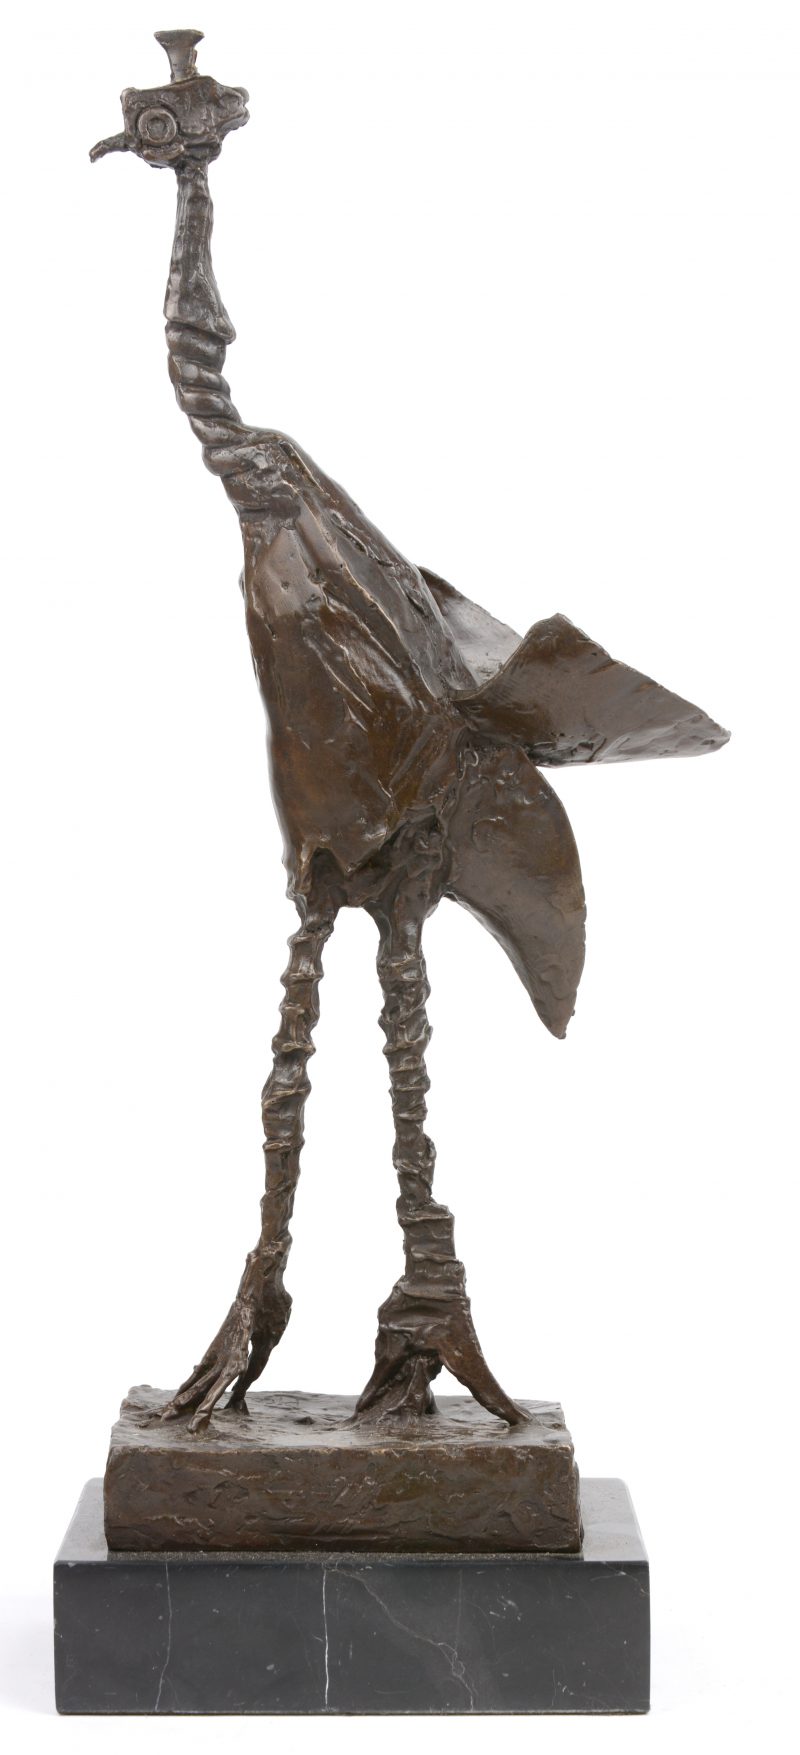 “De kraanvogel”. Een bronzen beeld naar het voorbeeld van Pablo Picasso.